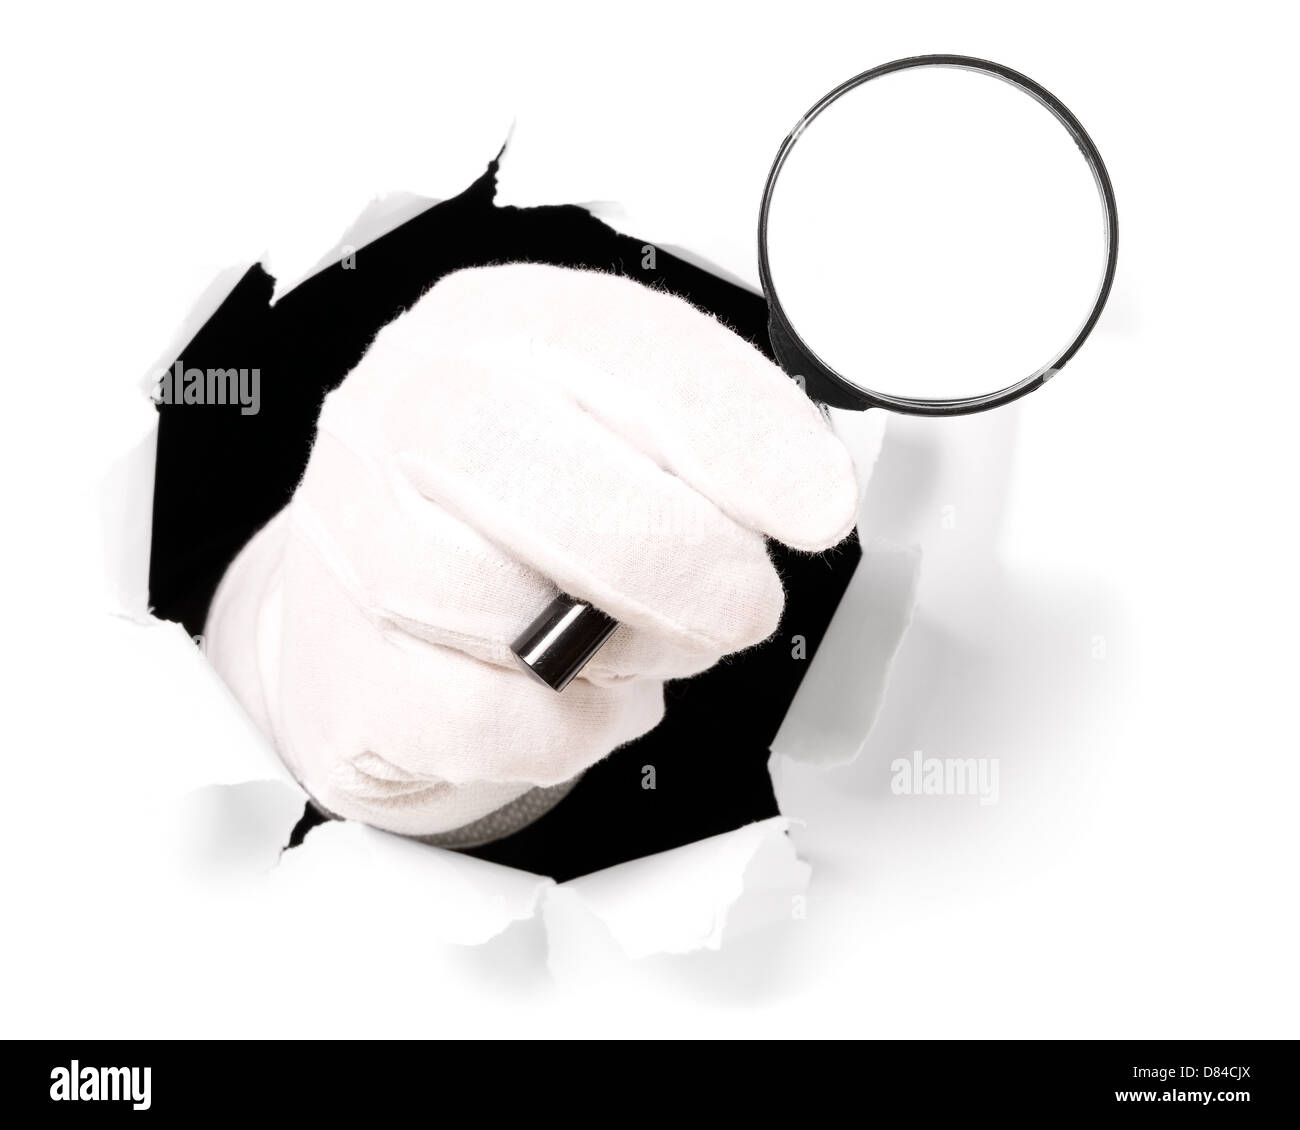 L'homme avec des gants est holding magnifying glass à travers un trou dans du papier blanc Banque D'Images